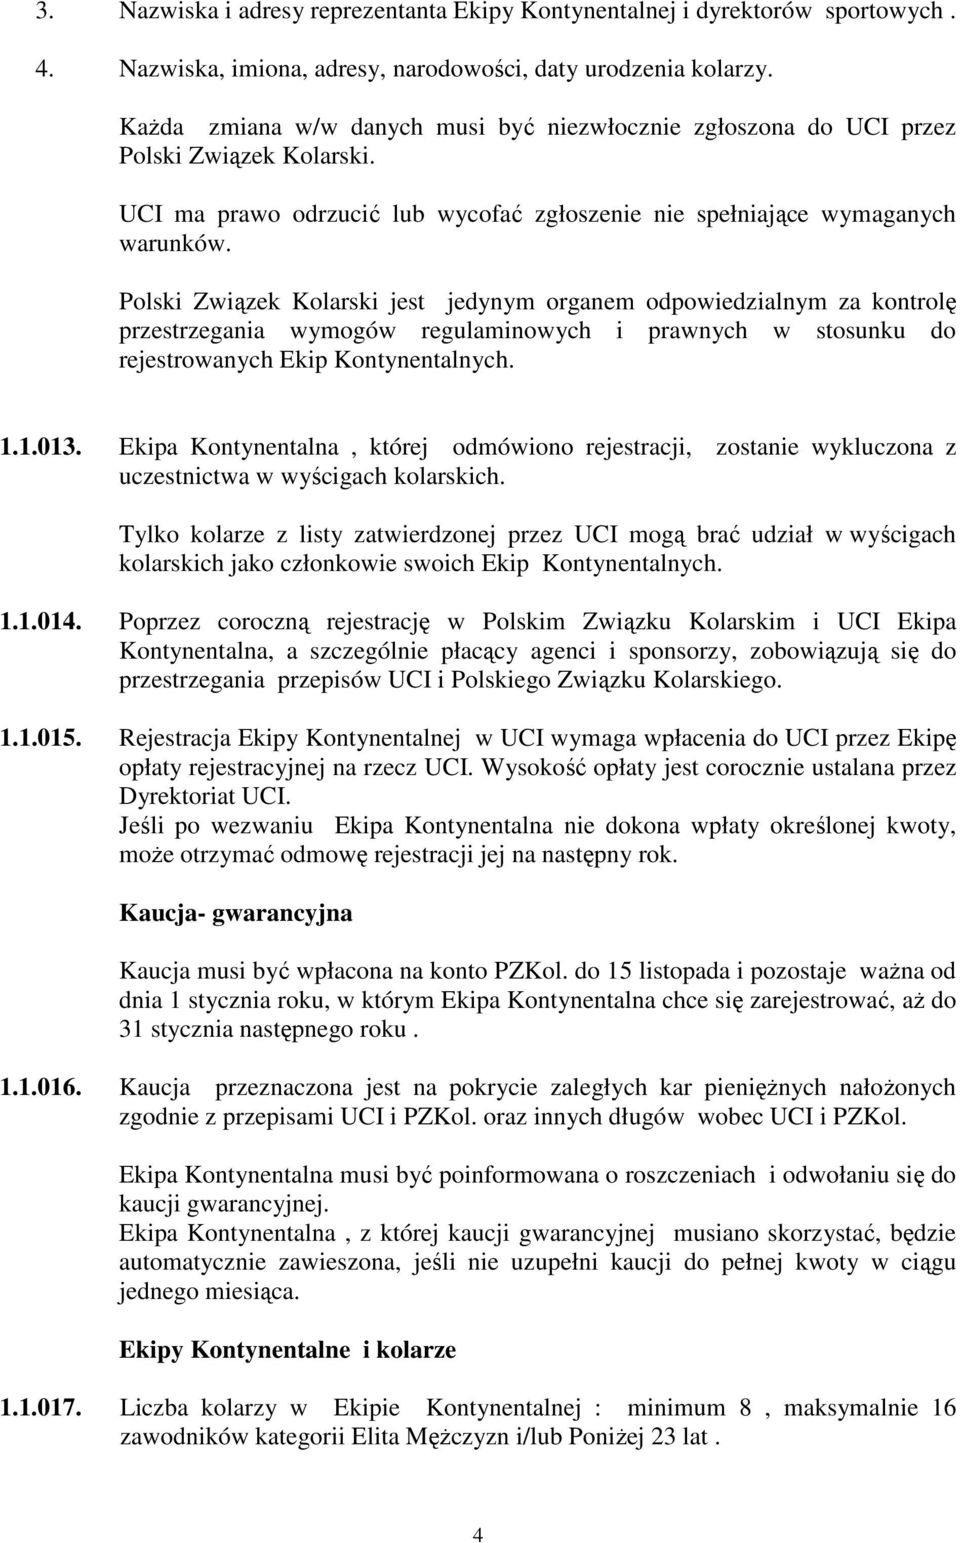 Polski Związek Kolarski jest jedynym organem odpowiedzialnym za kontrolę przestrzegania wymogów regulaminowych i prawnych w stosunku do rejestrowanych Ekip Kontynentalnych. 1.1.013.